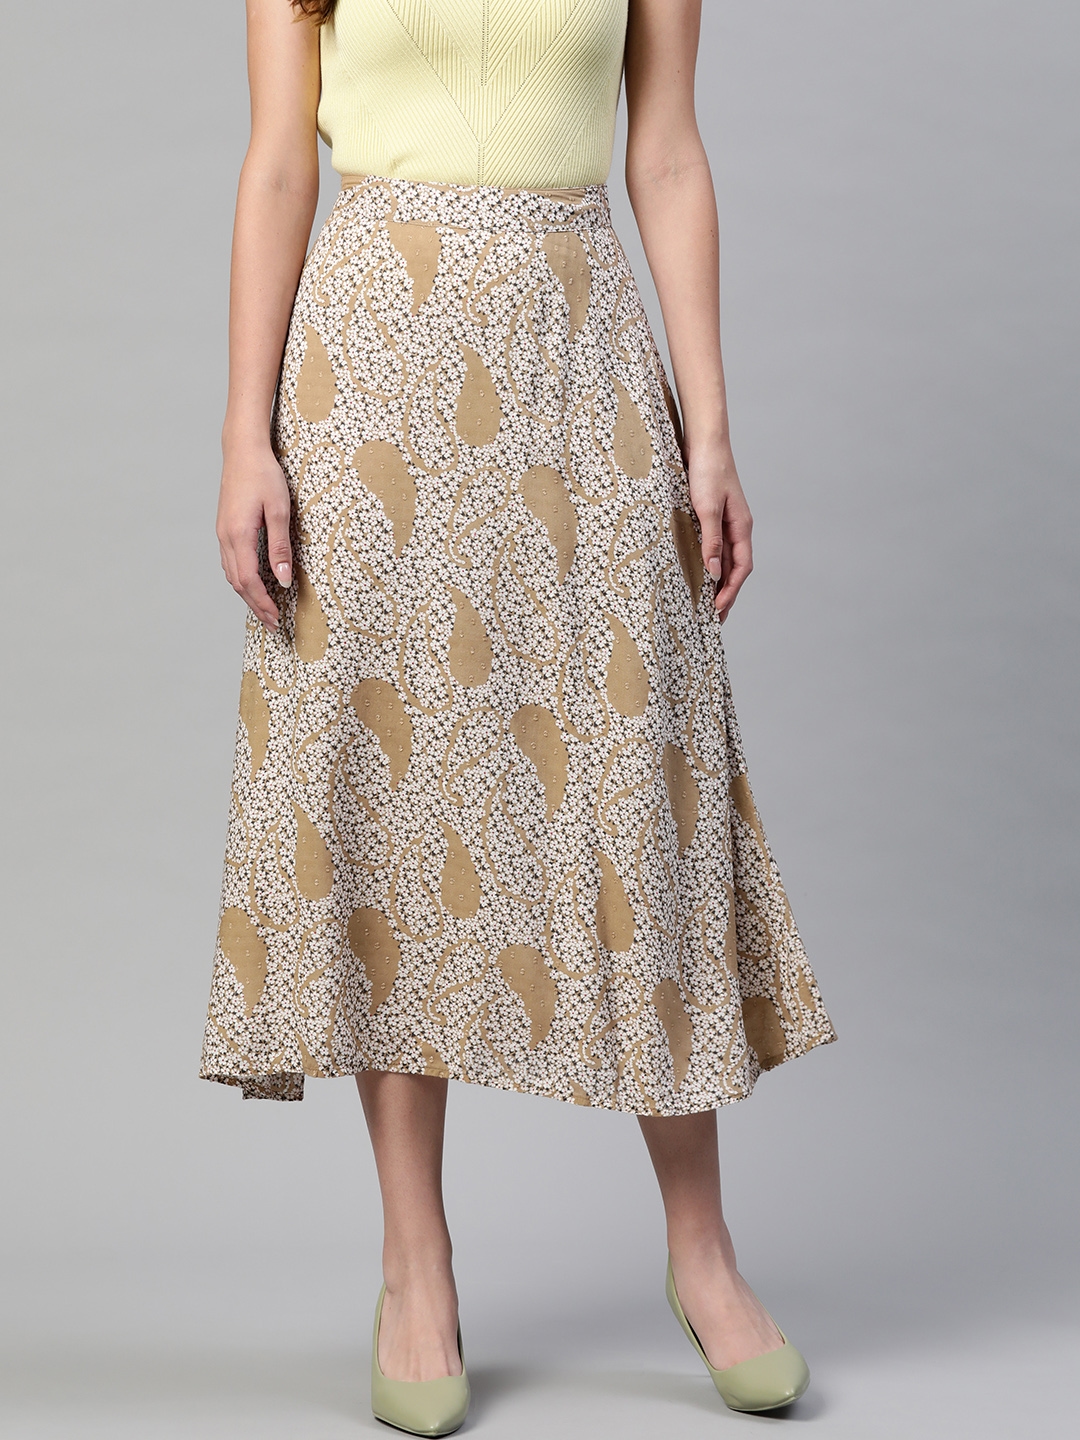 Marks & Spencer Women Beige & White Ethnic Print A-Line Midi Skirt